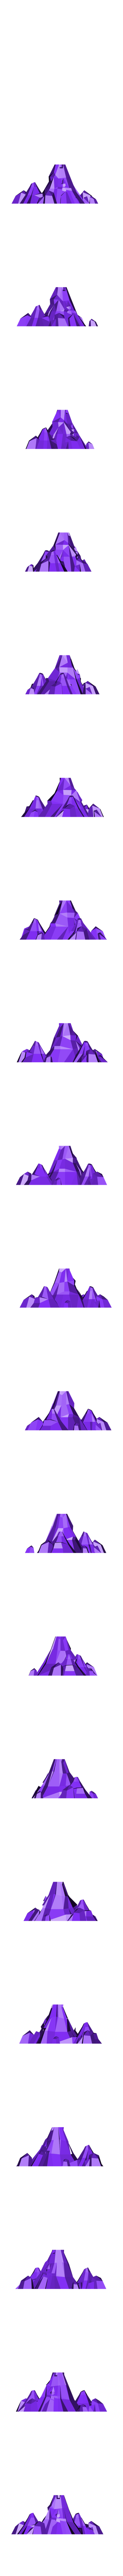 PUSHILIN_volcano.obj Télécharger fichier OBJ gratuit Volcan • Modèle pour imprimante 3D, Colorful3D